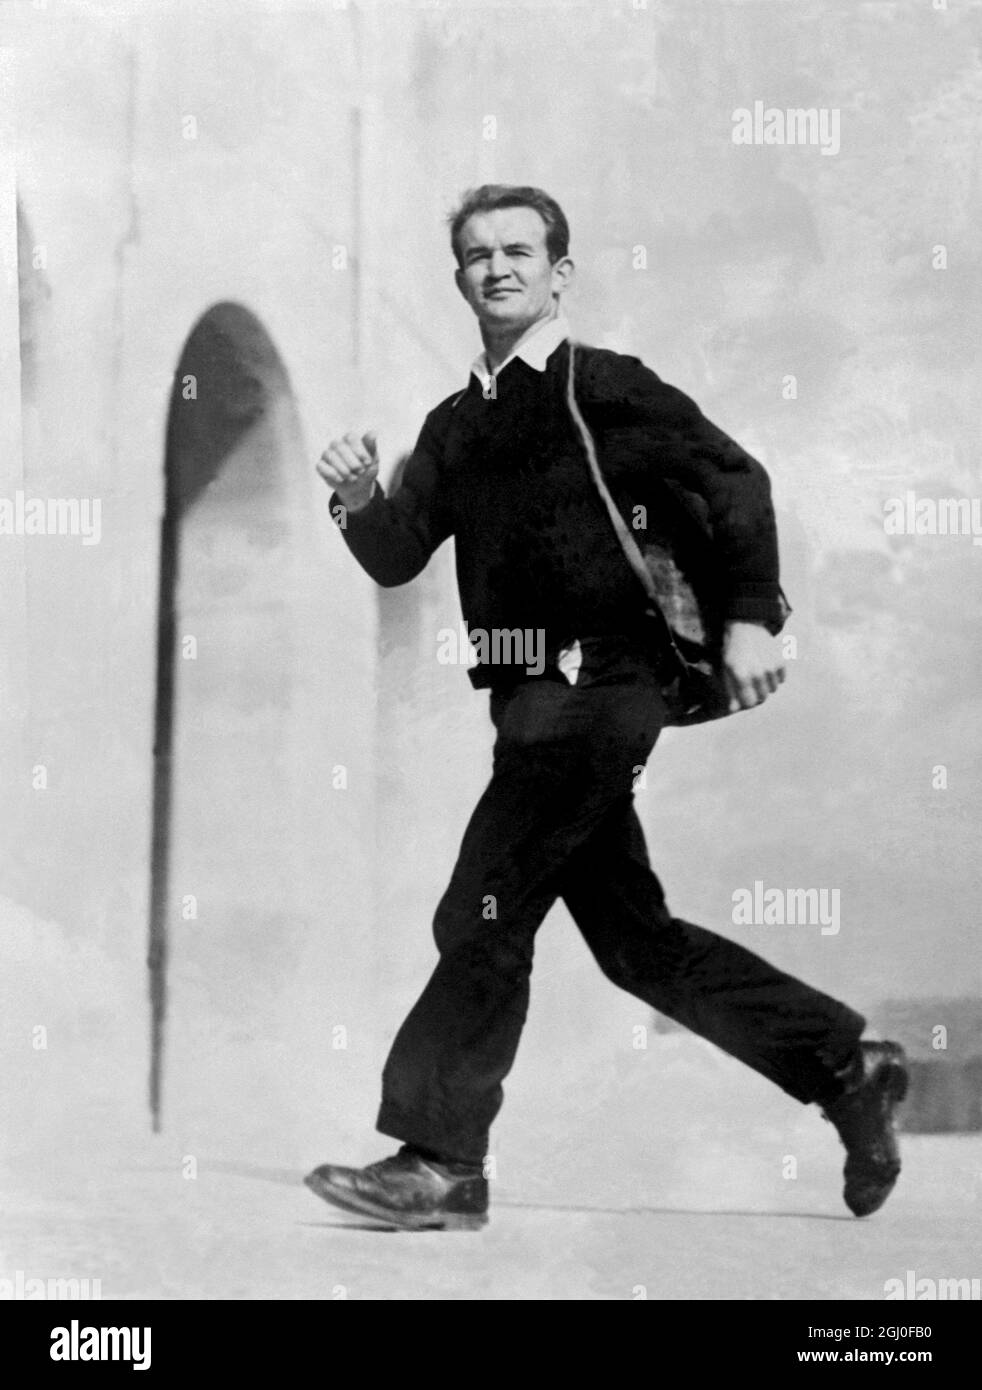 Rudolph Hantke, Inhaber des New York Metropolitan 25 Mile Walking Record, wanderte von New York nach Los Angeles, durchschnittlich dreißig Meilen pro Tag, um sich für die Wanderveranstaltungen der Olympischen Spiele zu konditionieren. Er wird sein Training in Los Angeles für den 50,000-Meter-Lauf bei den Olympischen Spielen beenden. Das Foto zeigt, wie Hantke seinen langen Langlaufspaziergang beendet und im Los Angeles Stadium ankommt. Januar 1932 Stockfoto